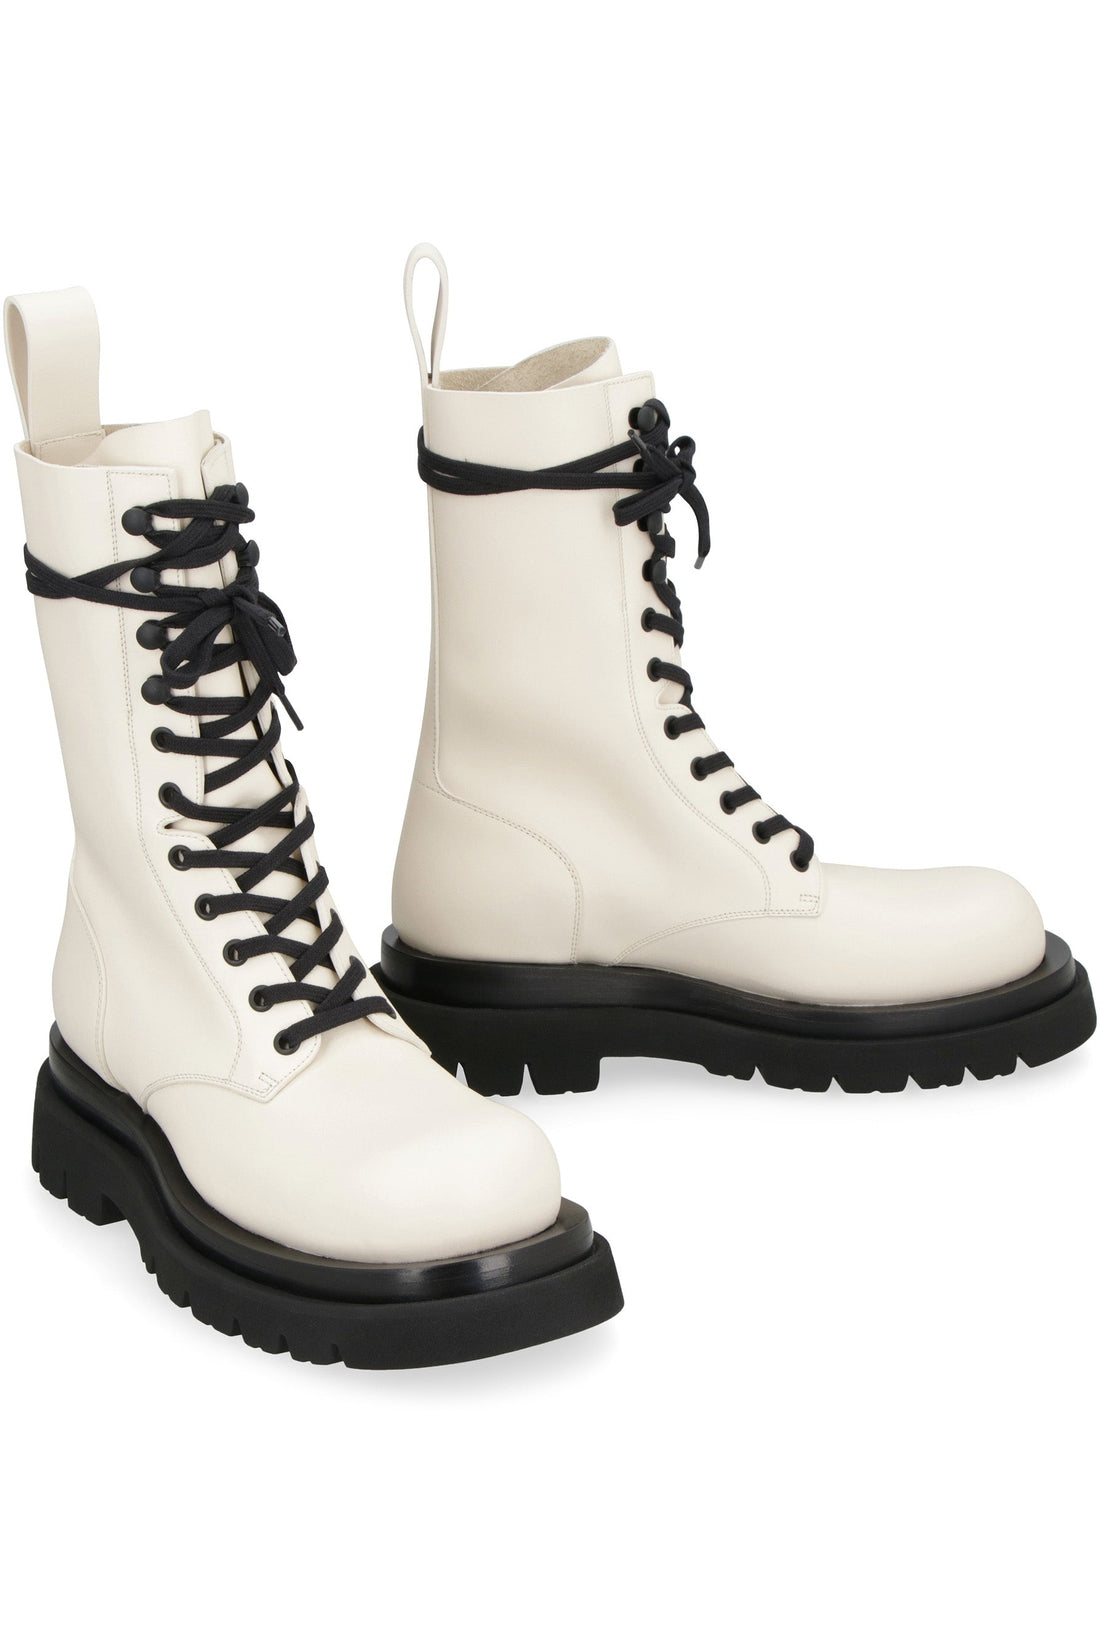 Bottega Veneta-OUTLET-SALE-Lug lace-up ankle boots-ARCHIVIST